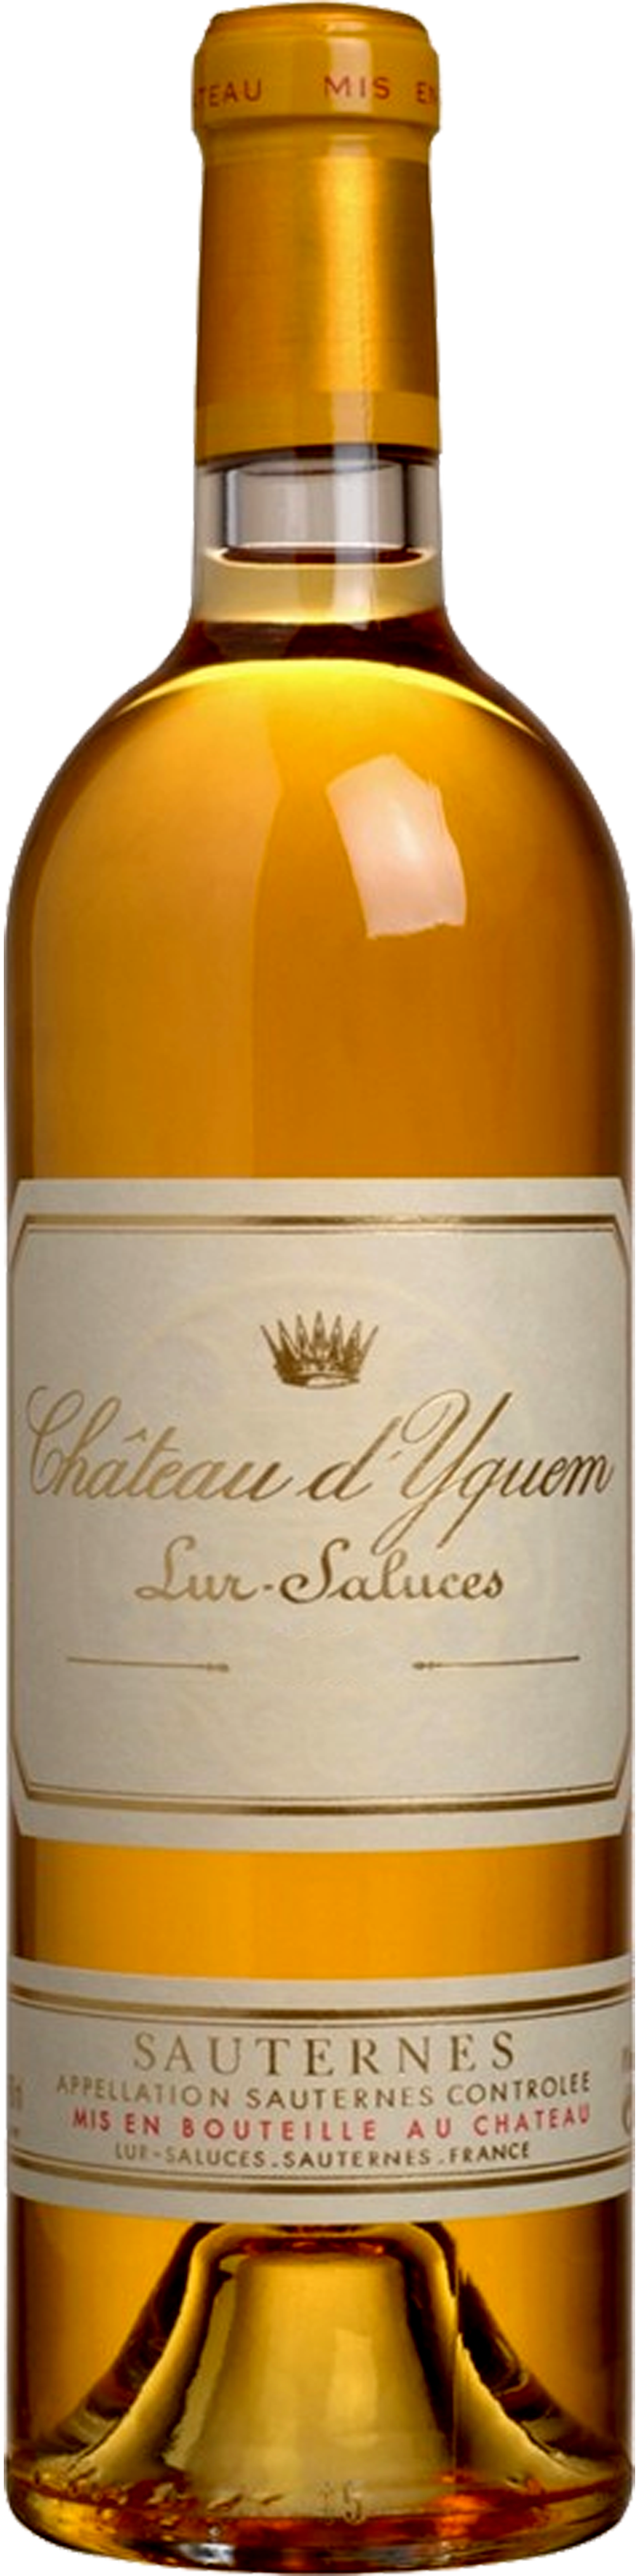 Image of product Château Yquem, 1er Cru Supérieur Sauternes